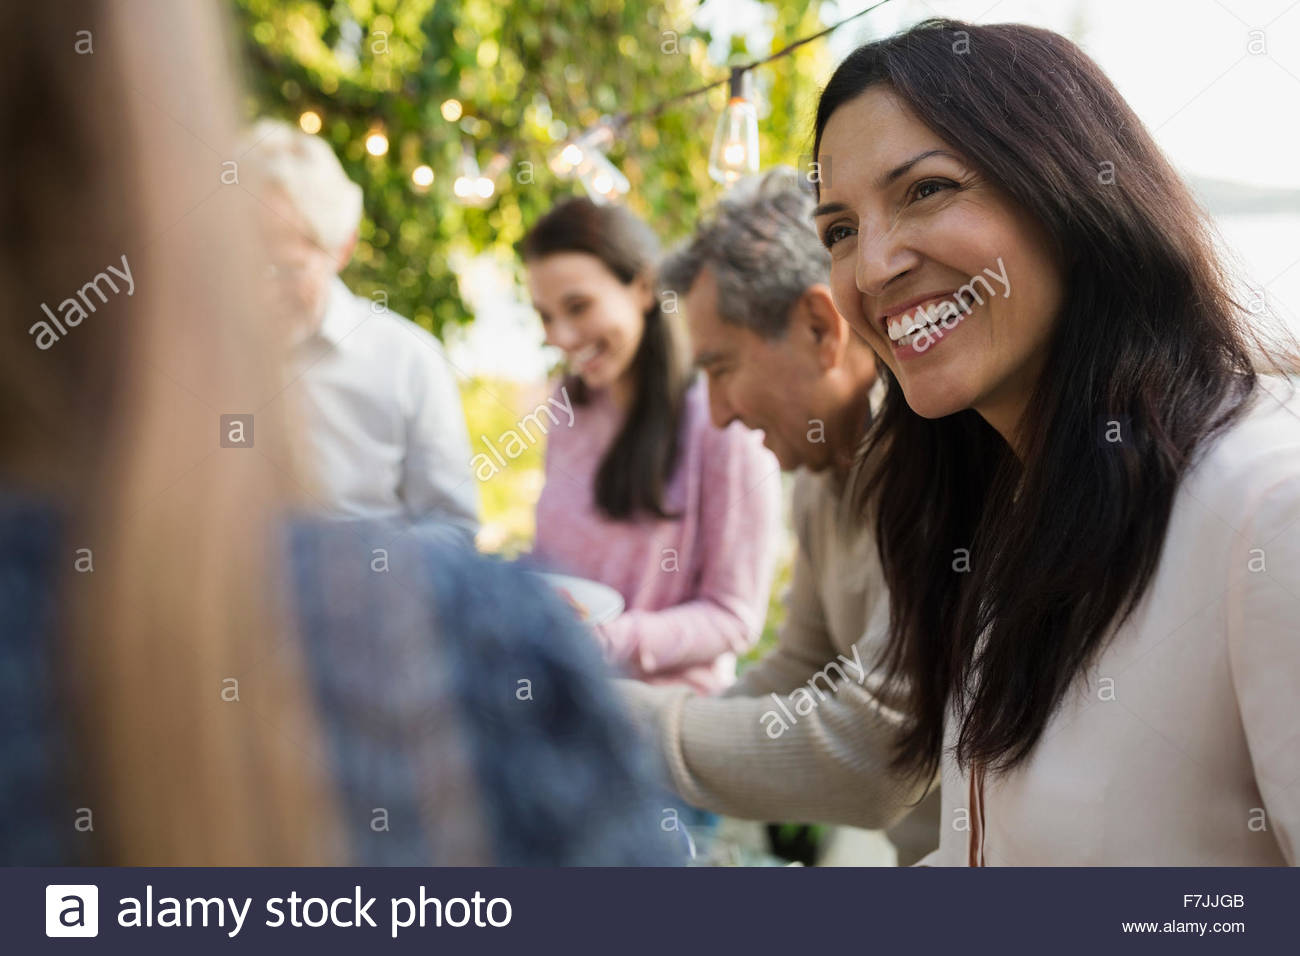 Smiling woman talking at social gathering Stock Photo